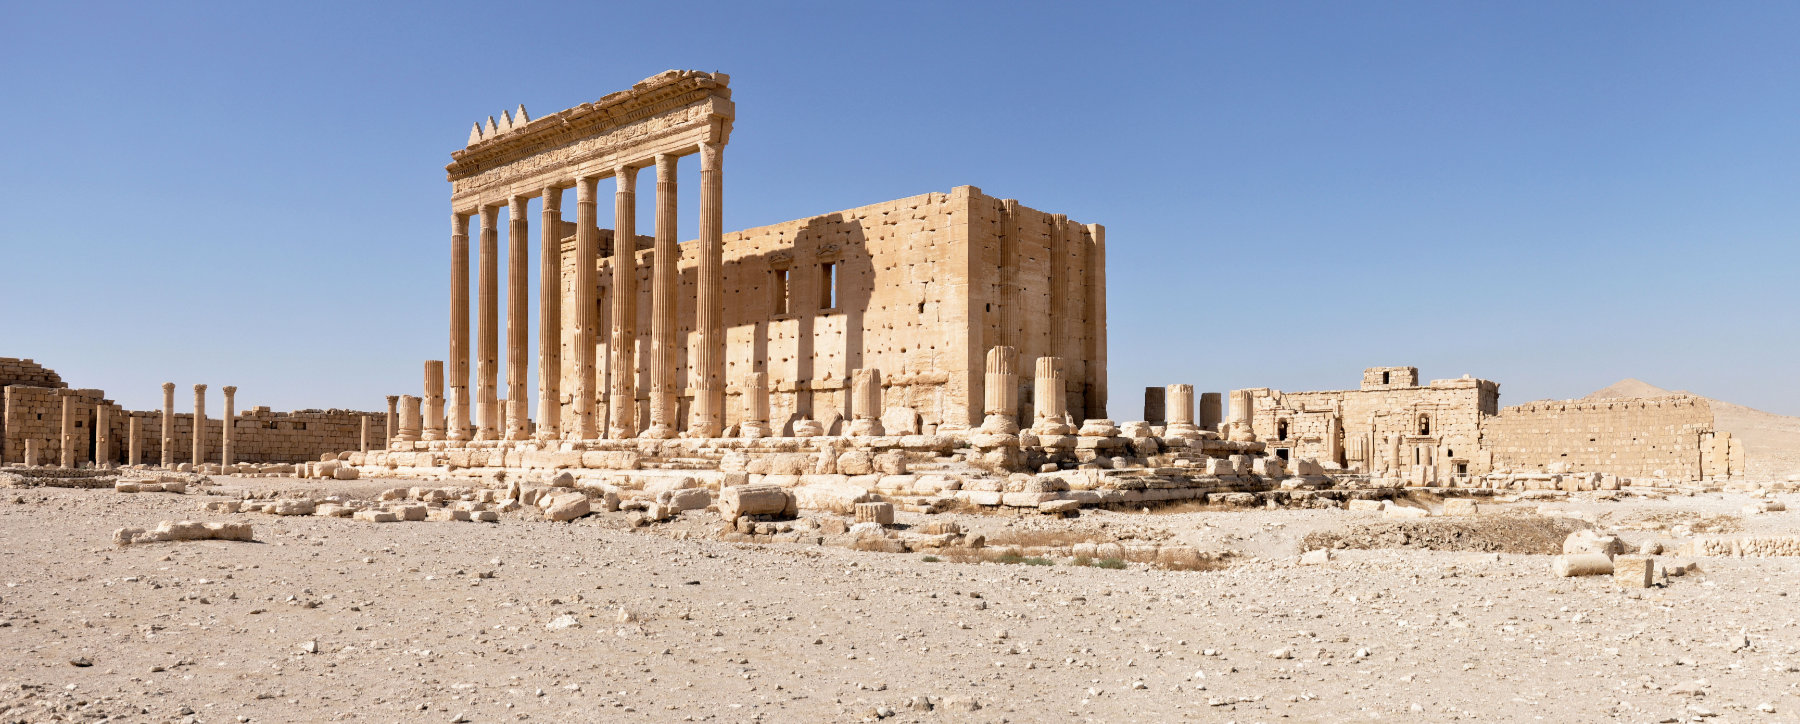 Tempelruine mit Säulen